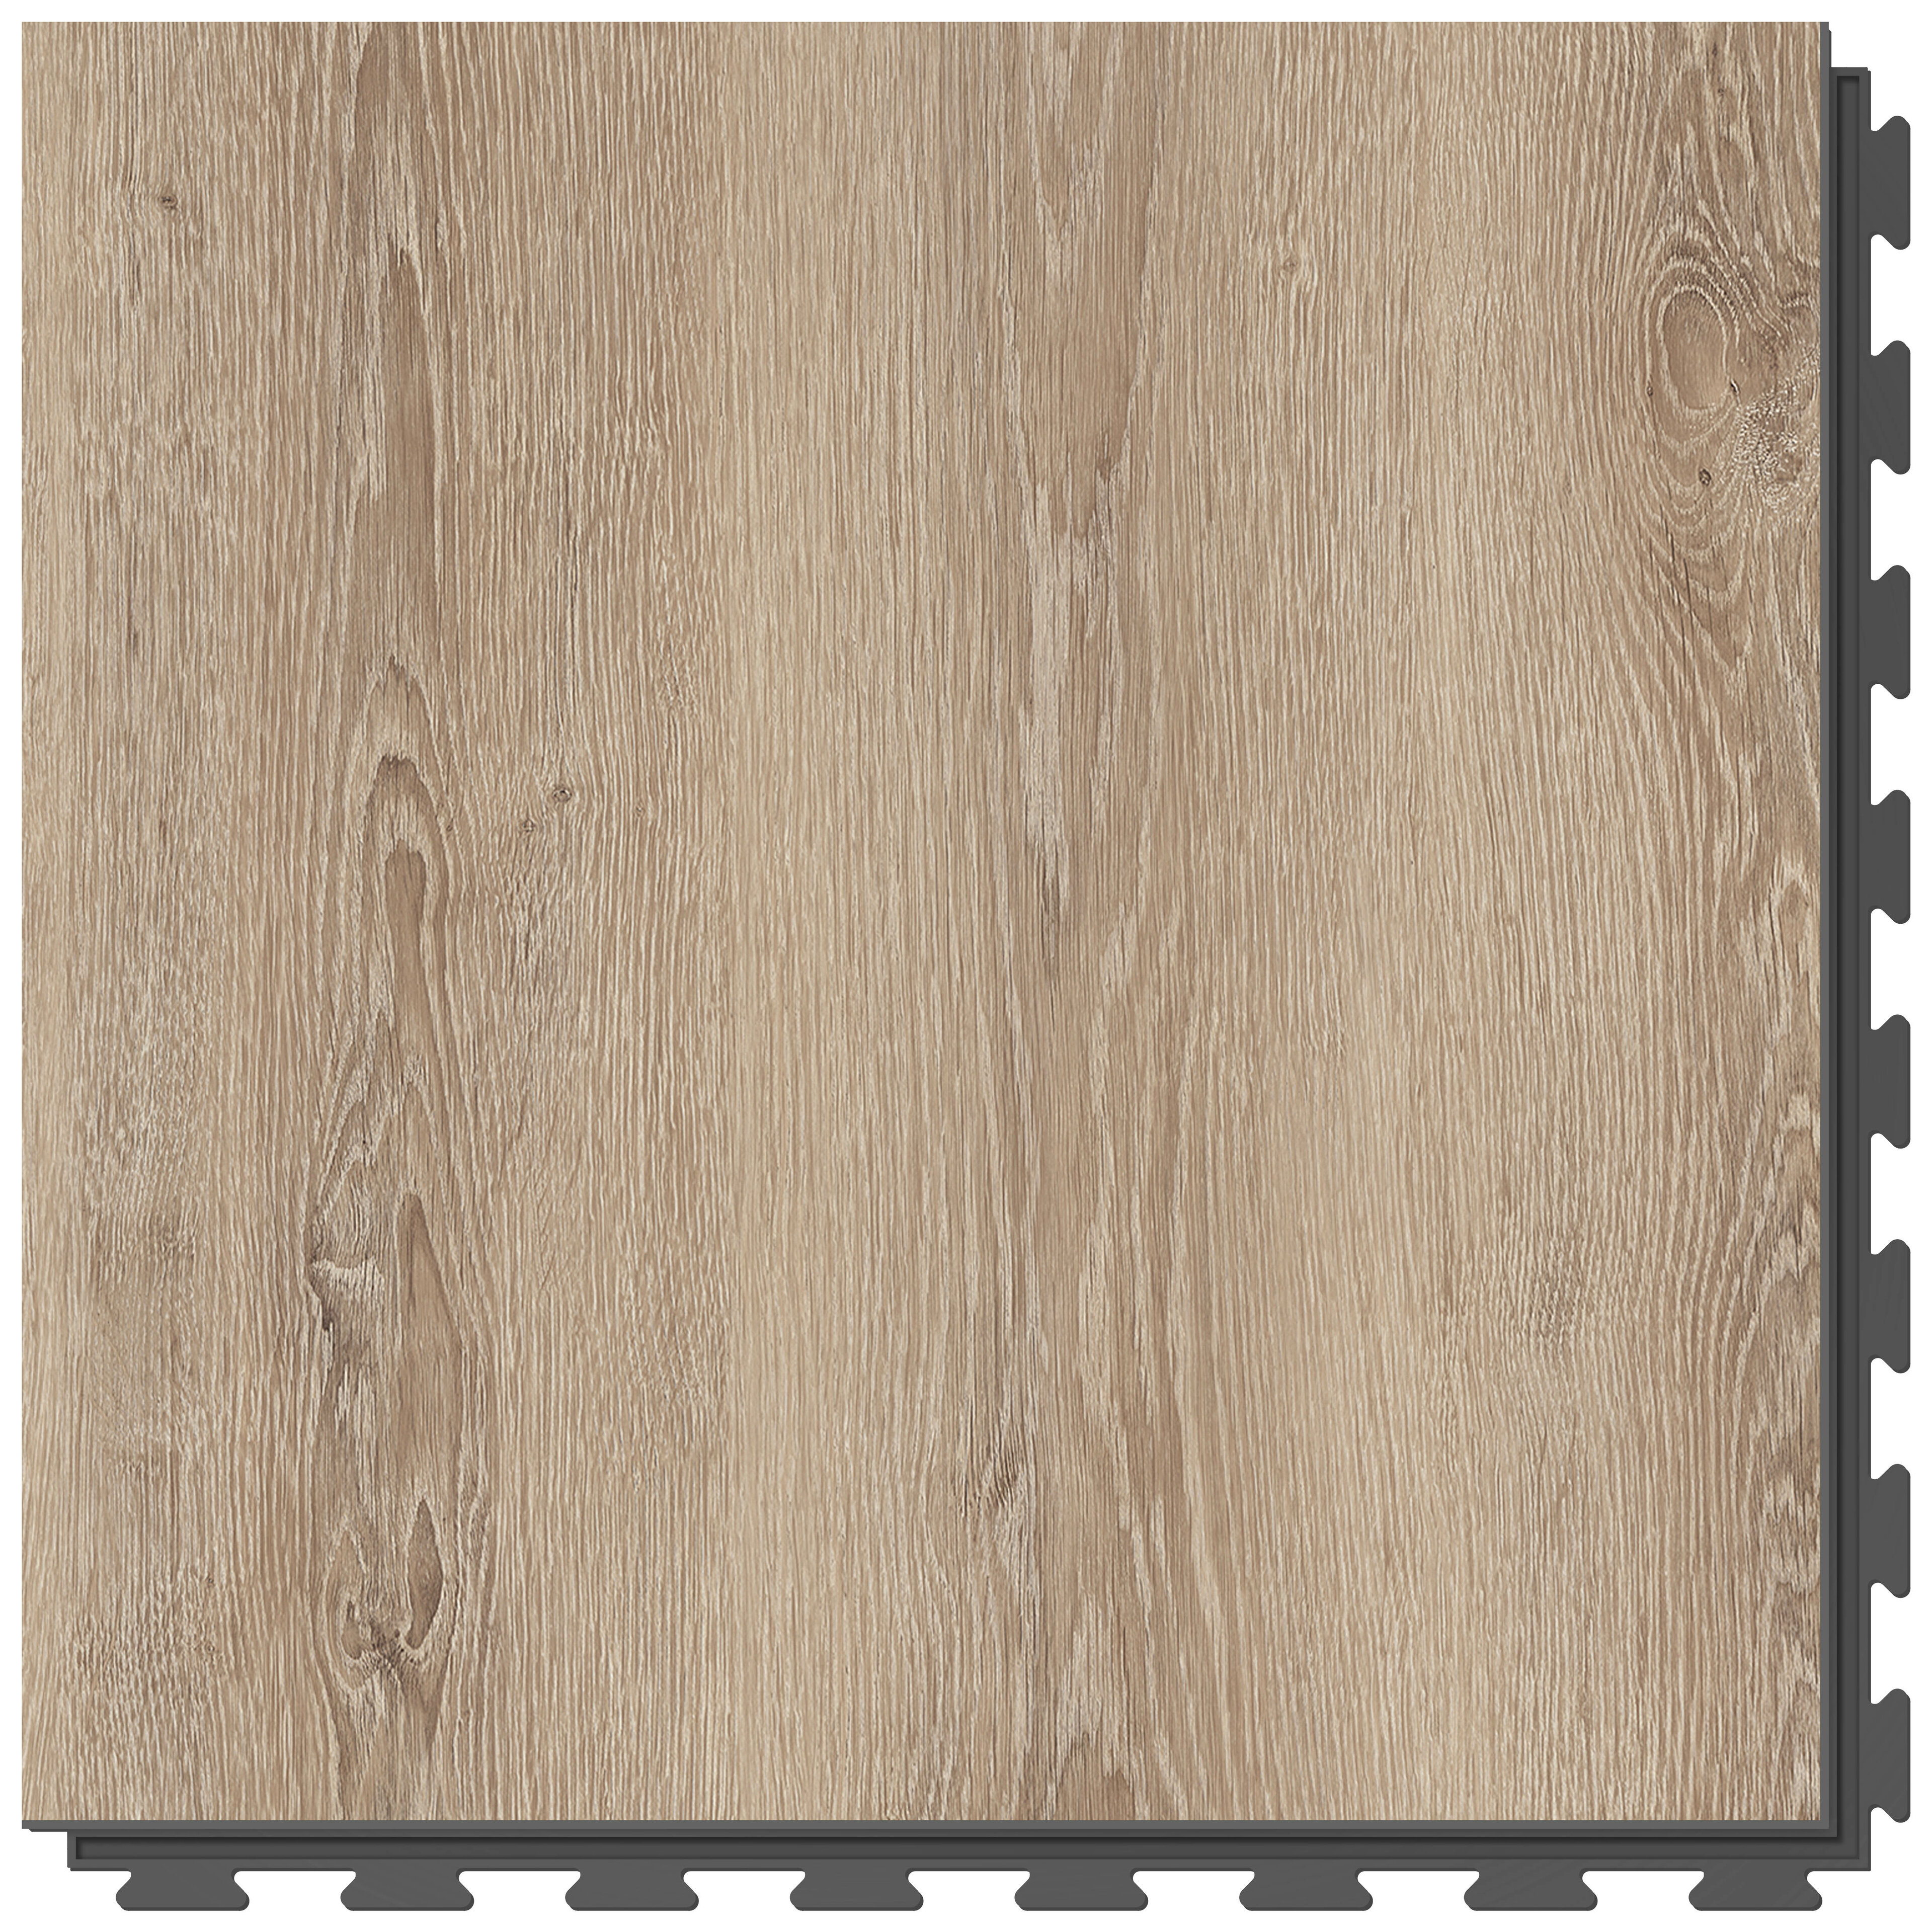 Hnedá PVC vinylová dlažba Fortelock Business Tyrolean oak W001 Graphite - dĺžka 66,8 cm, šírka 66,8 cm, výška 0,7 cm